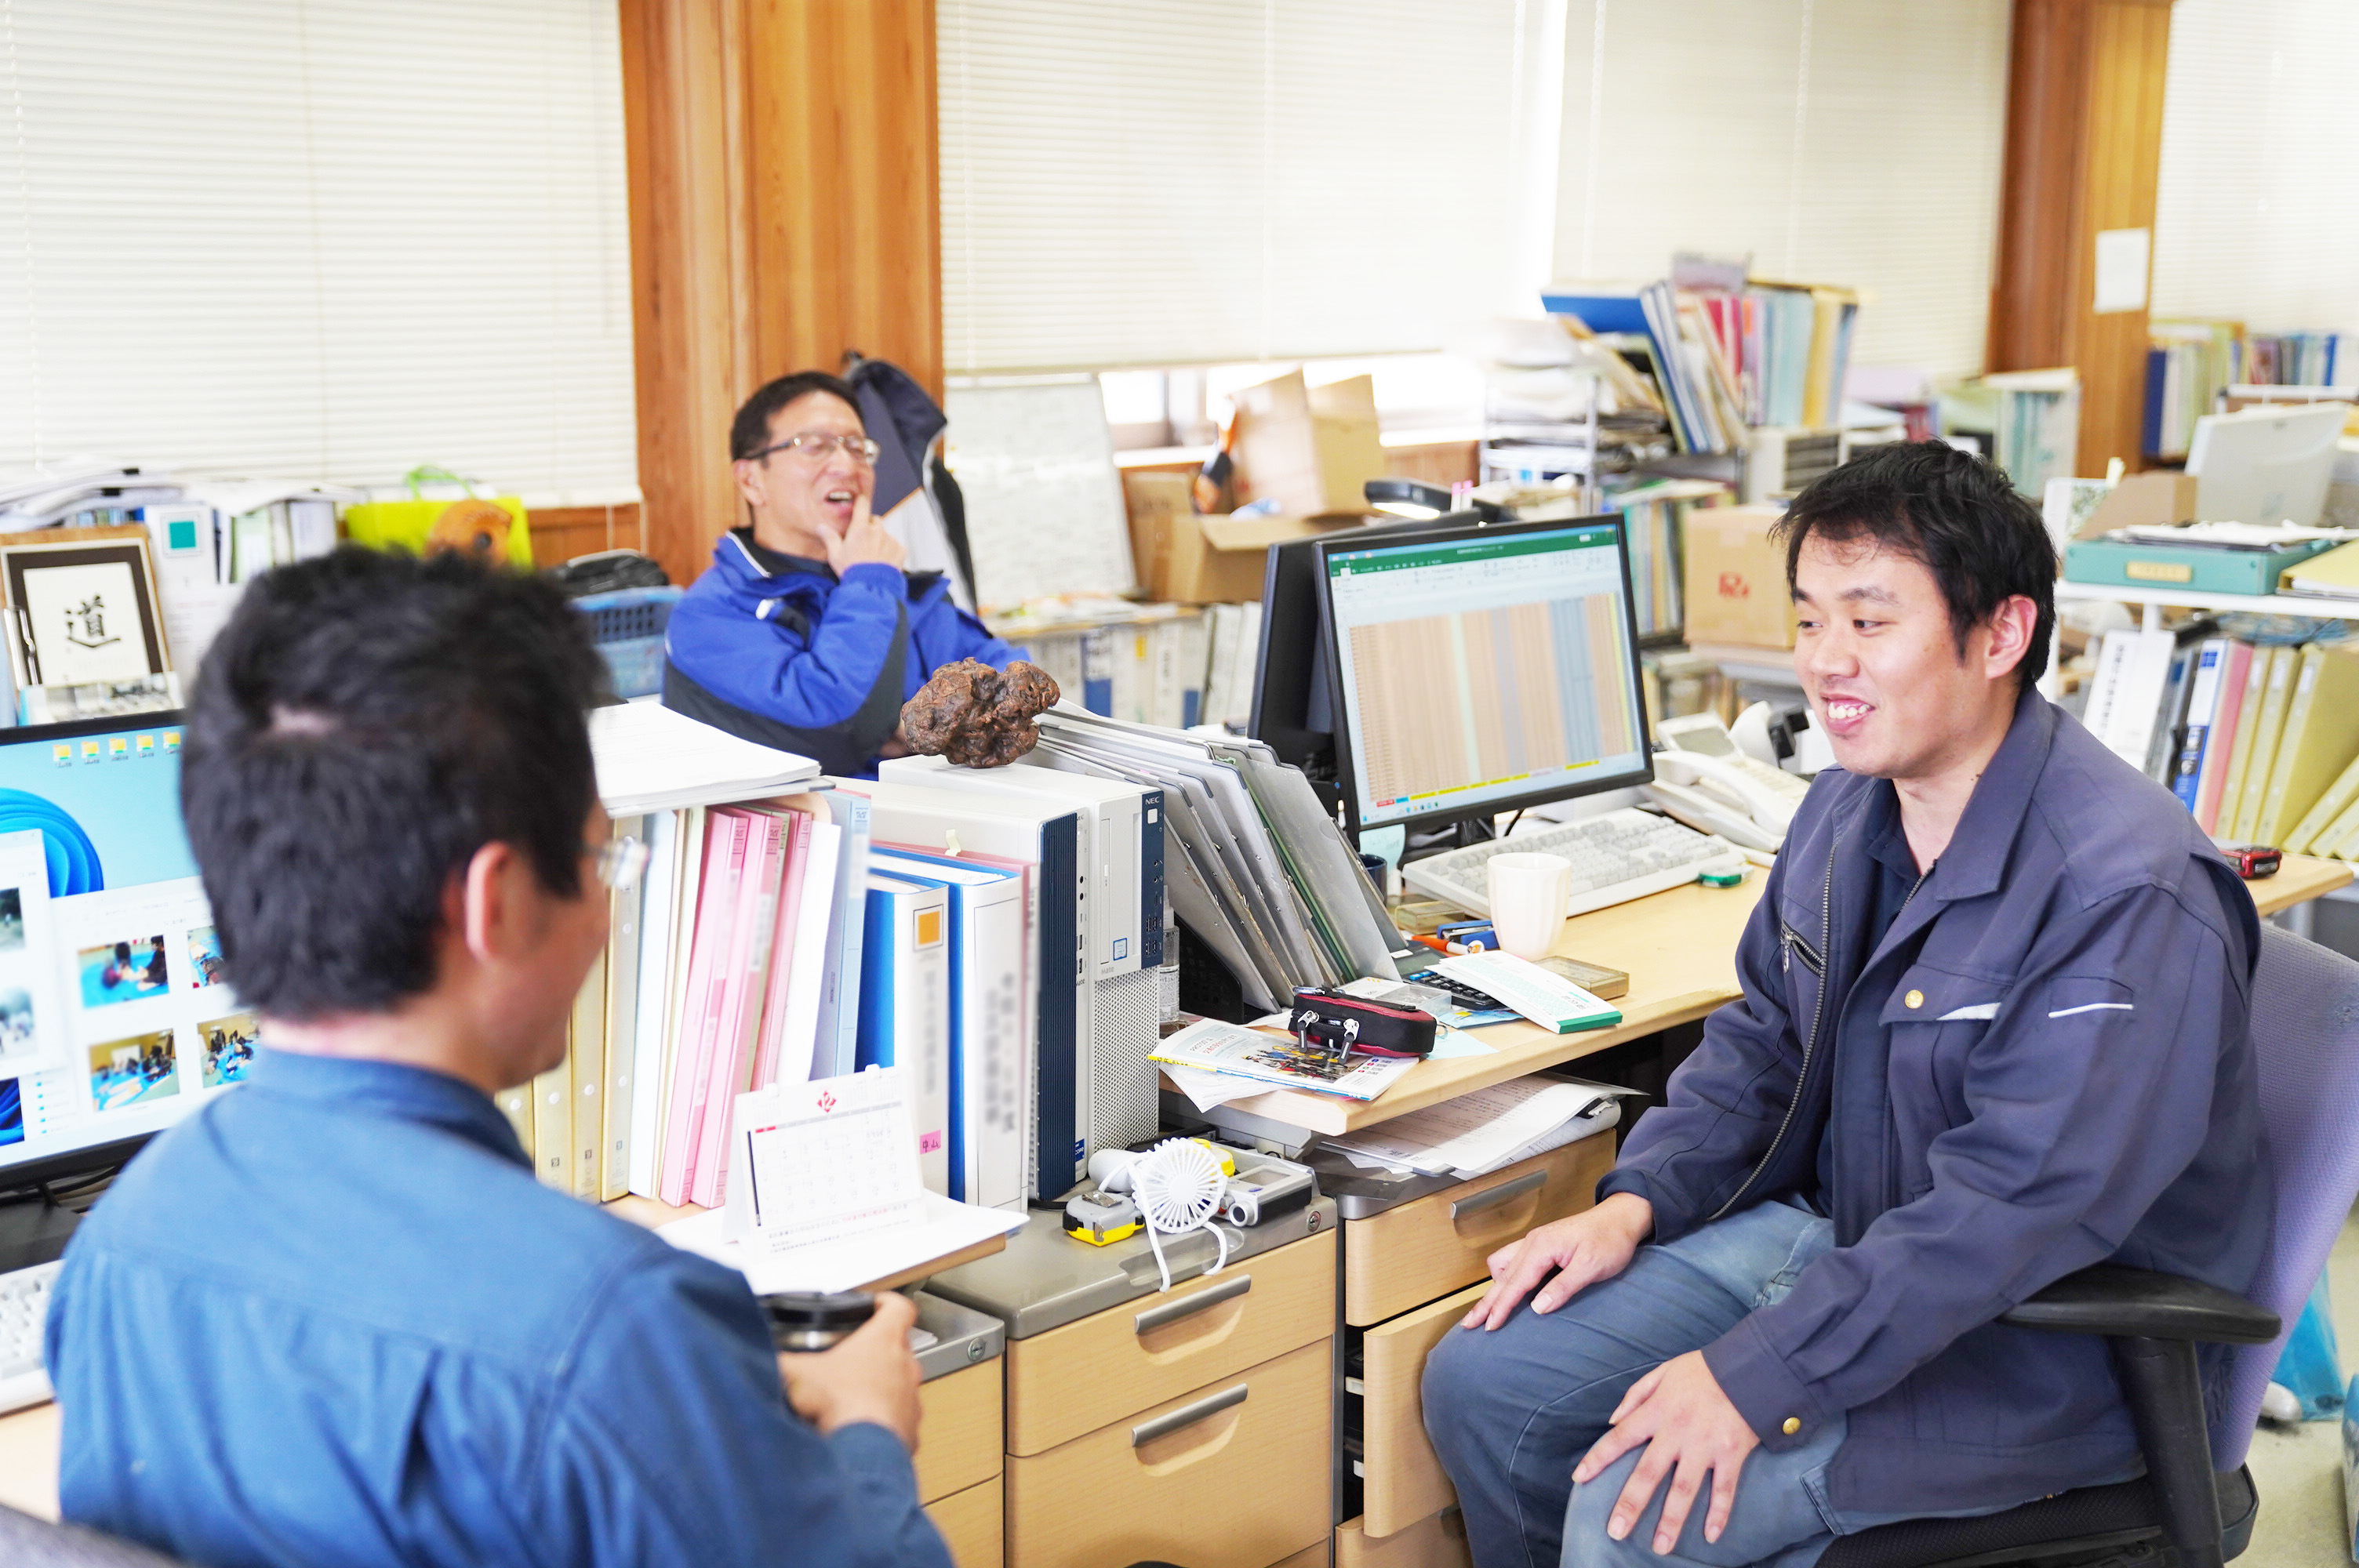 村上さん、妻鳥さん、鈴木さんが、職場で談笑している様子。